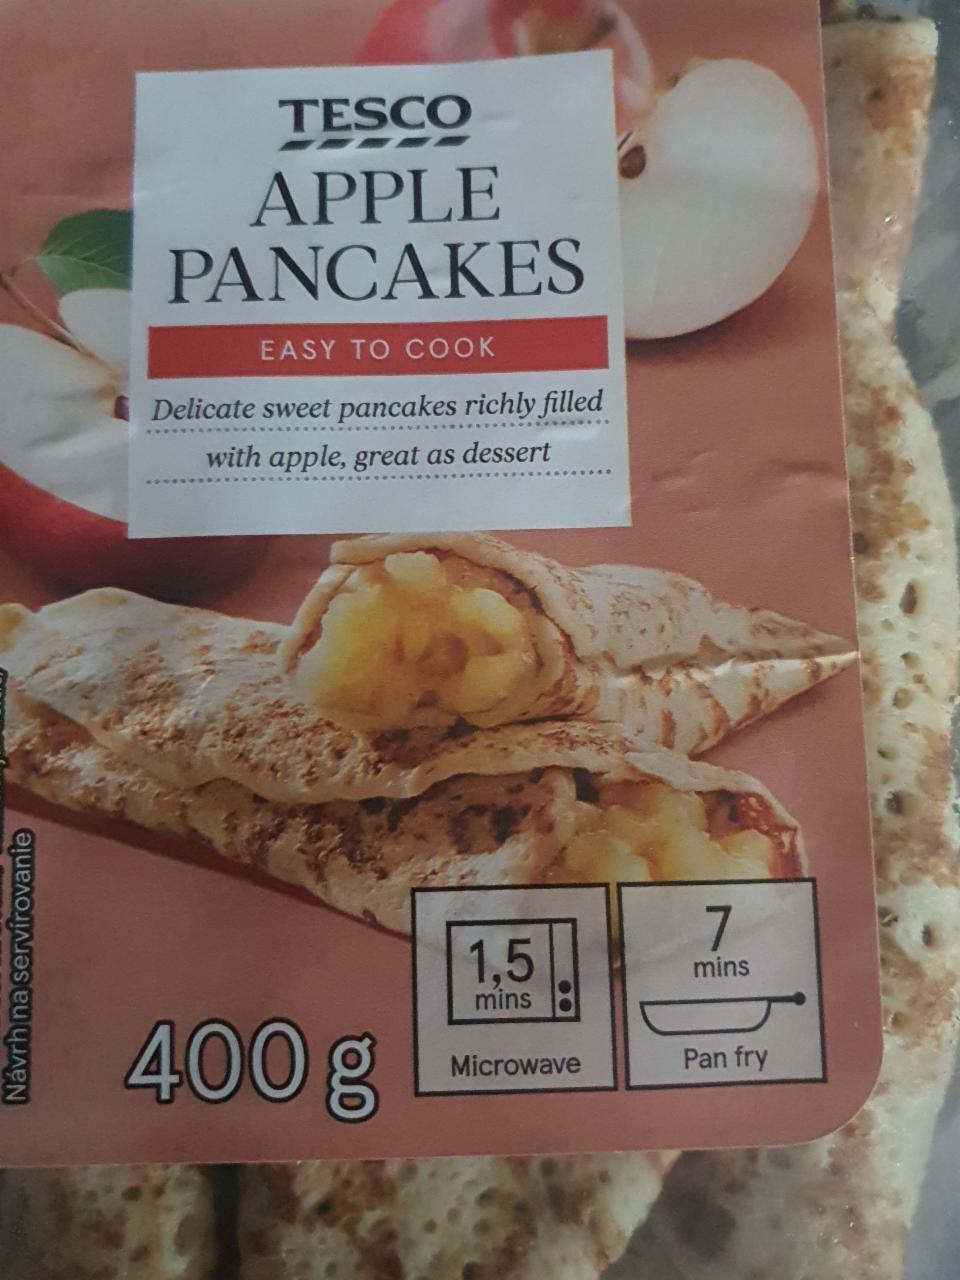 Képek - Apple pancakes Tesco